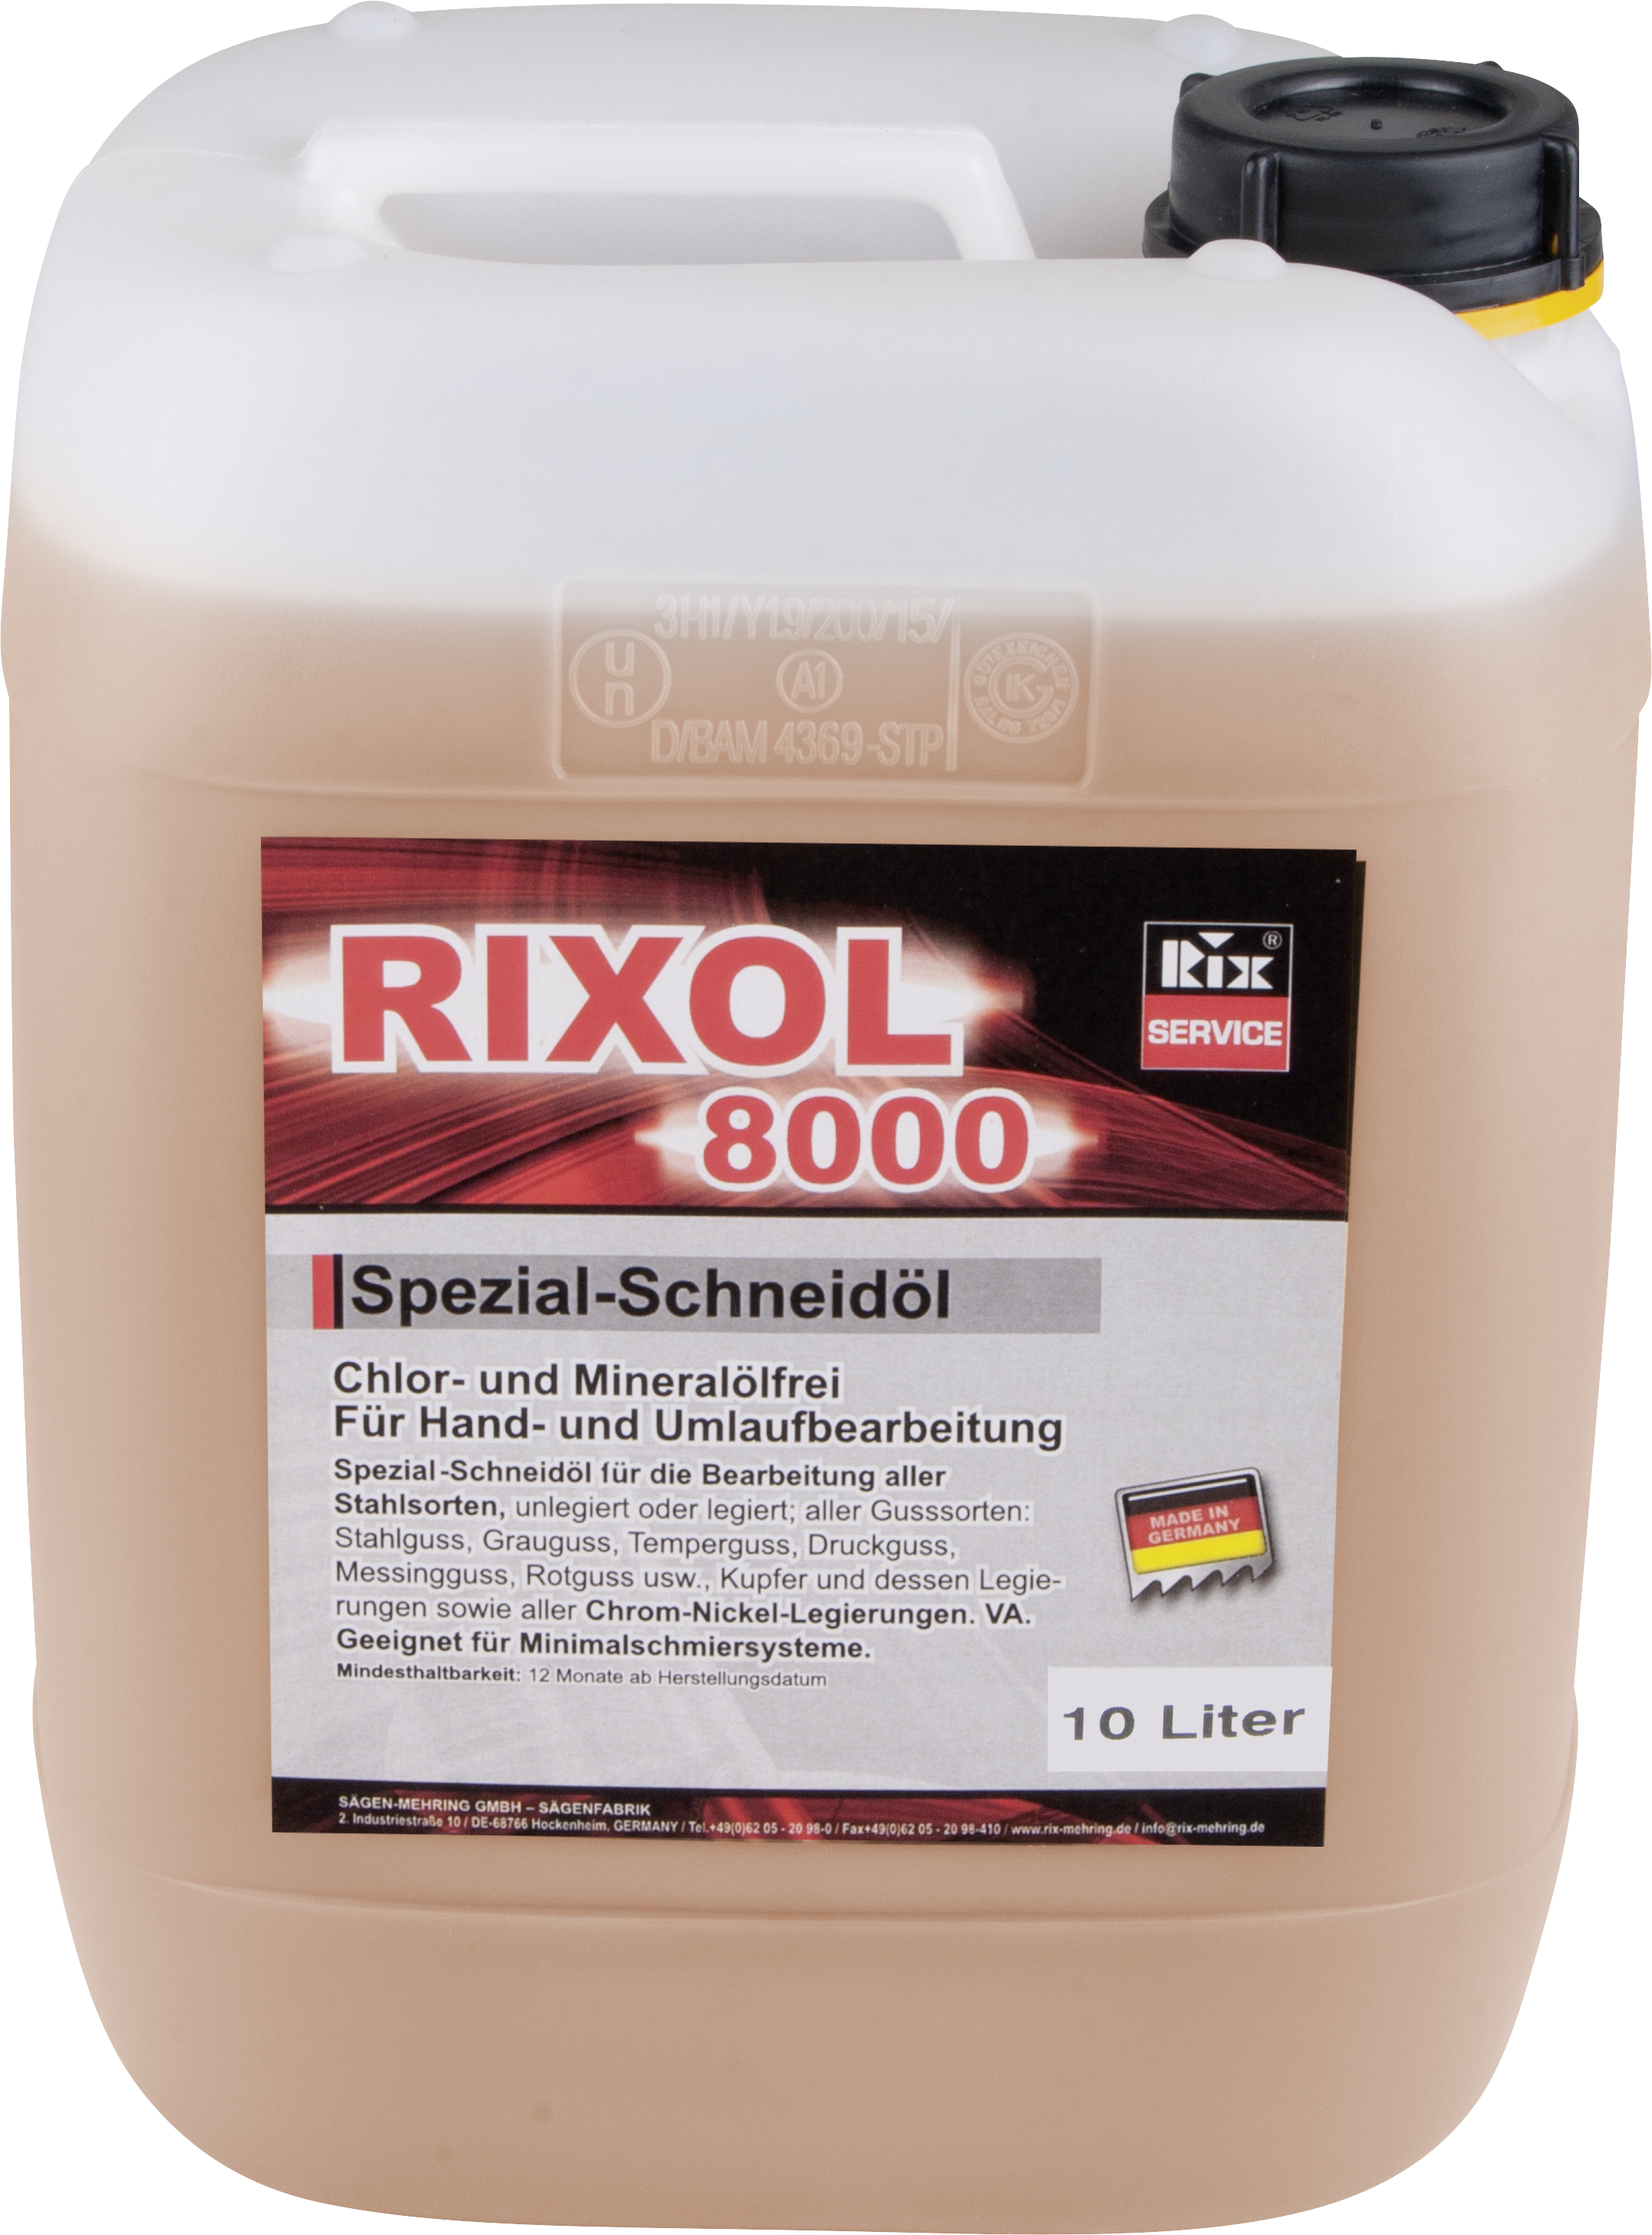 RixOL 2000 Kühlmittel-Konzentrat